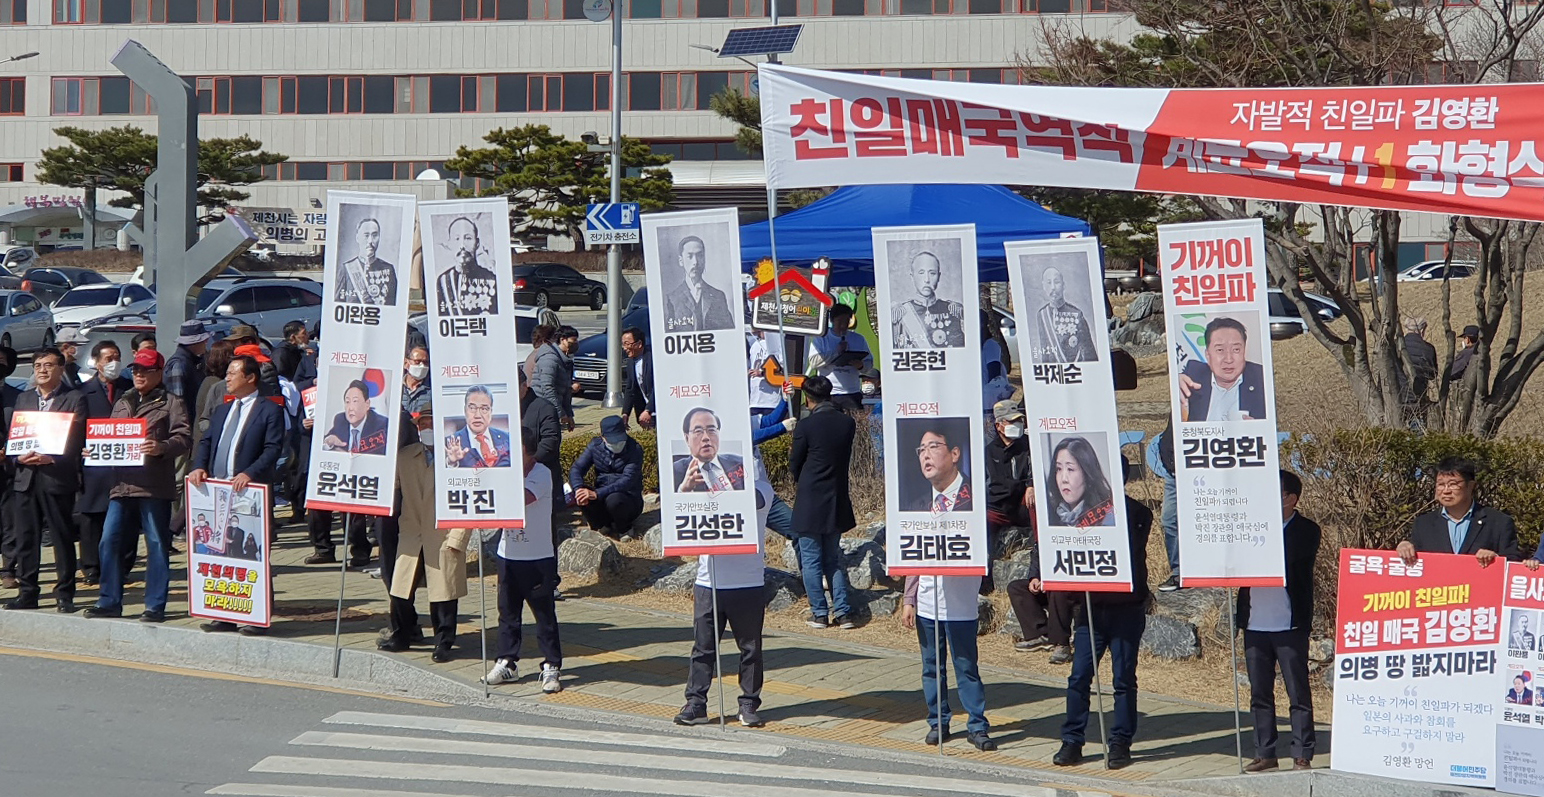 ‘의병의 땅 밟지 마라’ 제천 사회단체, 김영환 충북지사 규탄 집회